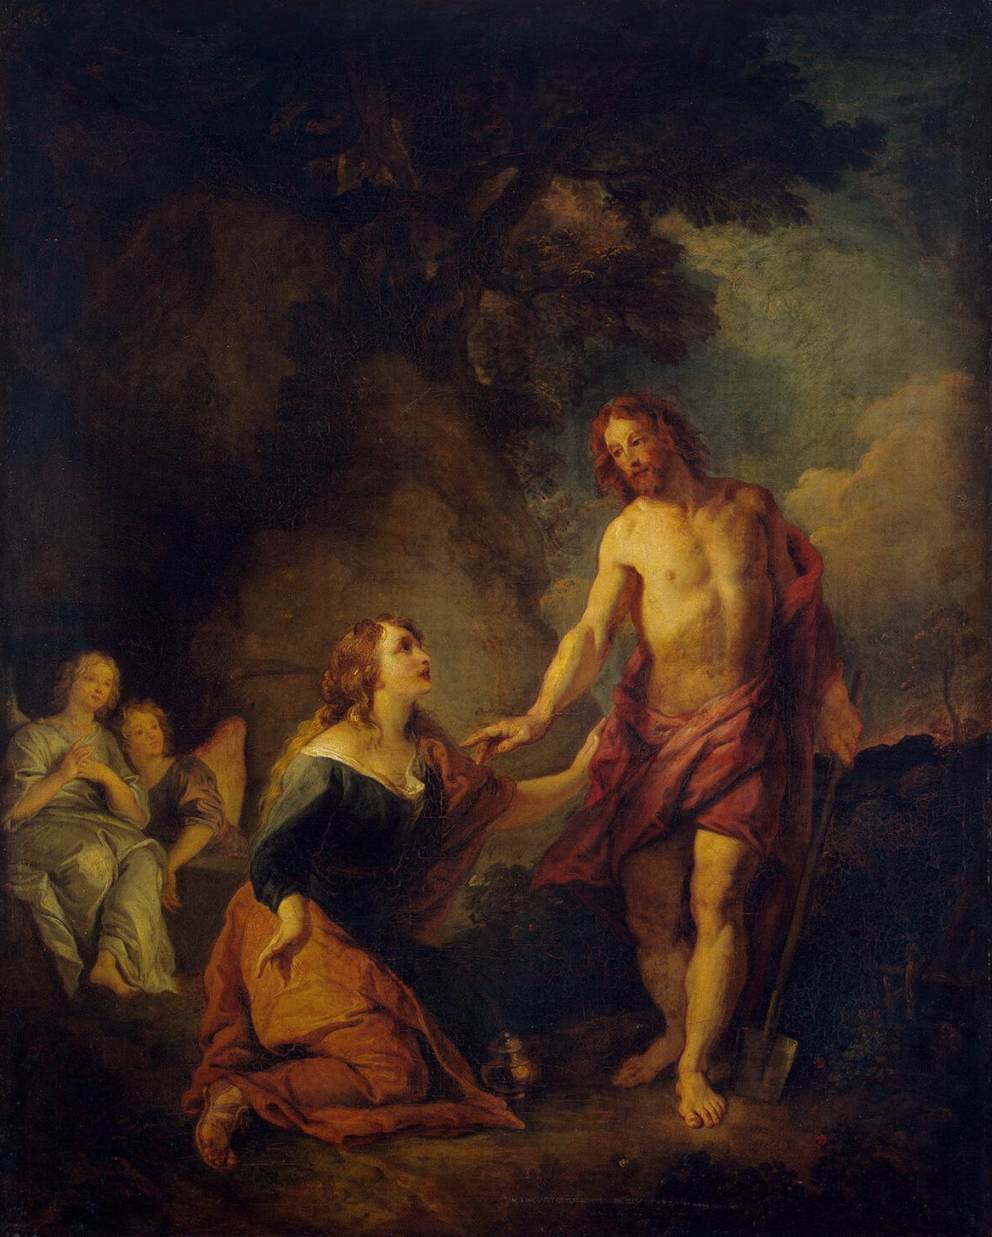 Le Christ apparaissant à Marie Madeleène